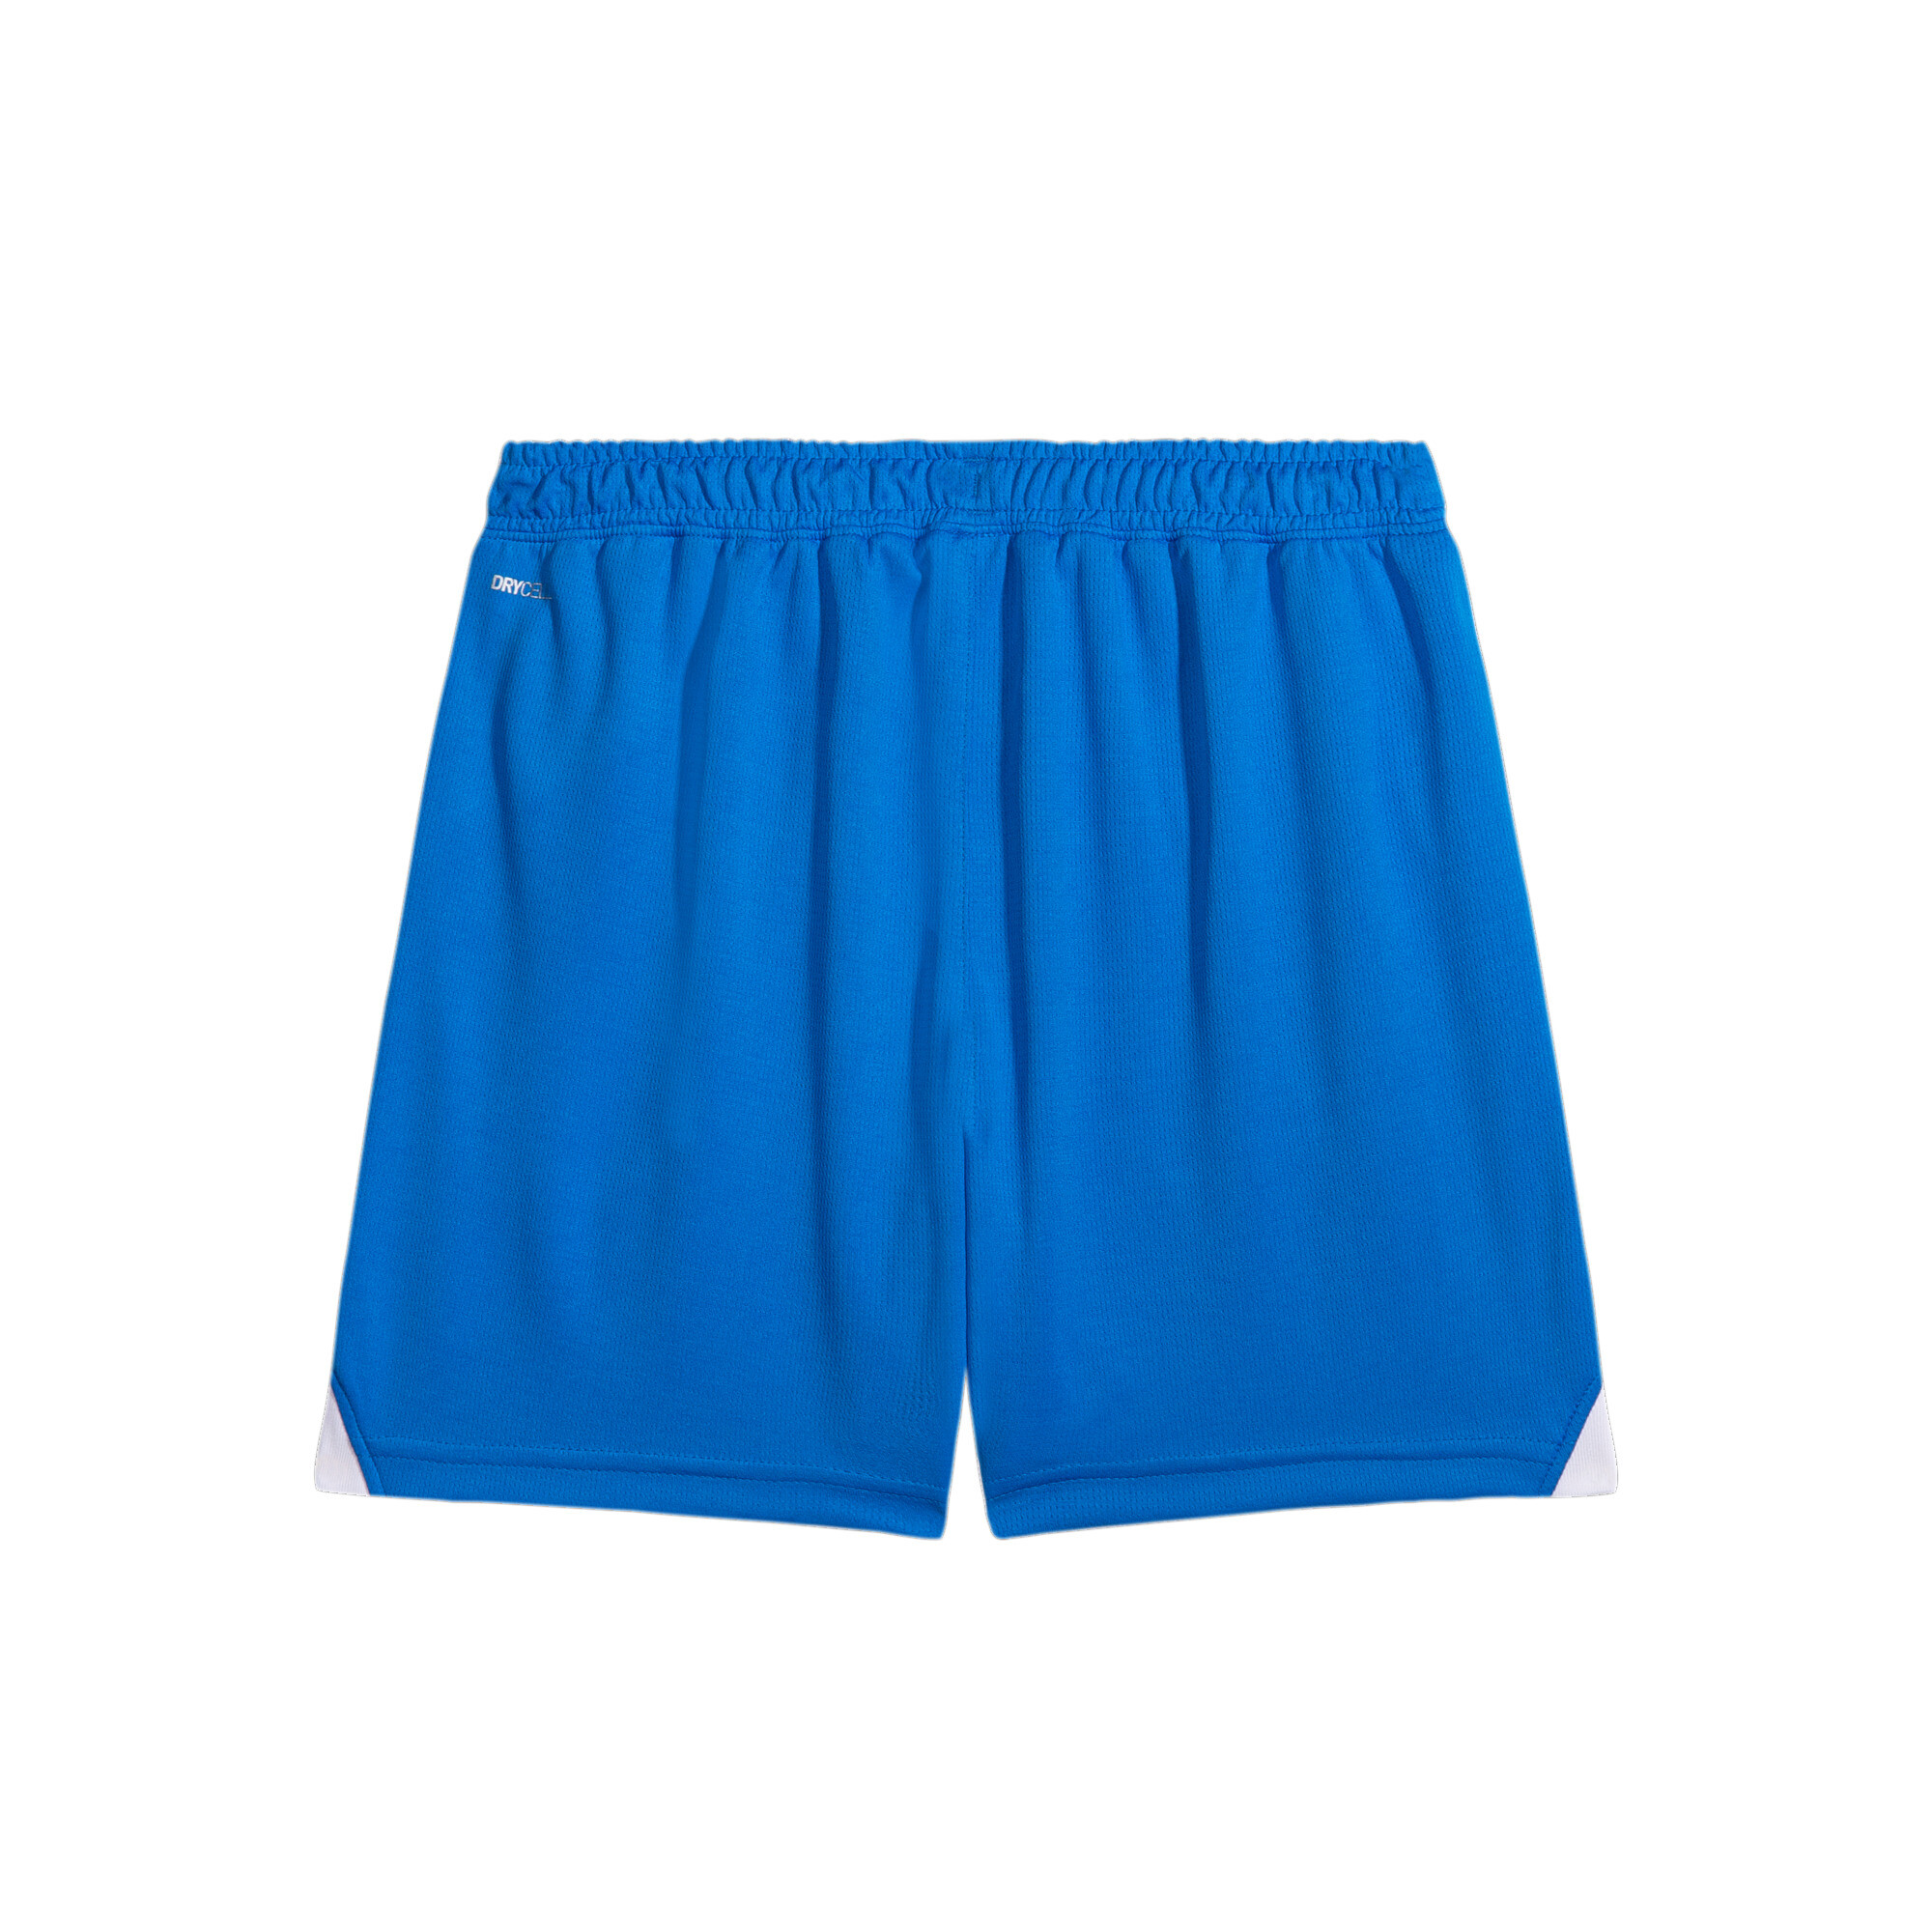 PUMA Al Hilal 23/24 Replica Shorts In Blue, Size 11-12 Youth